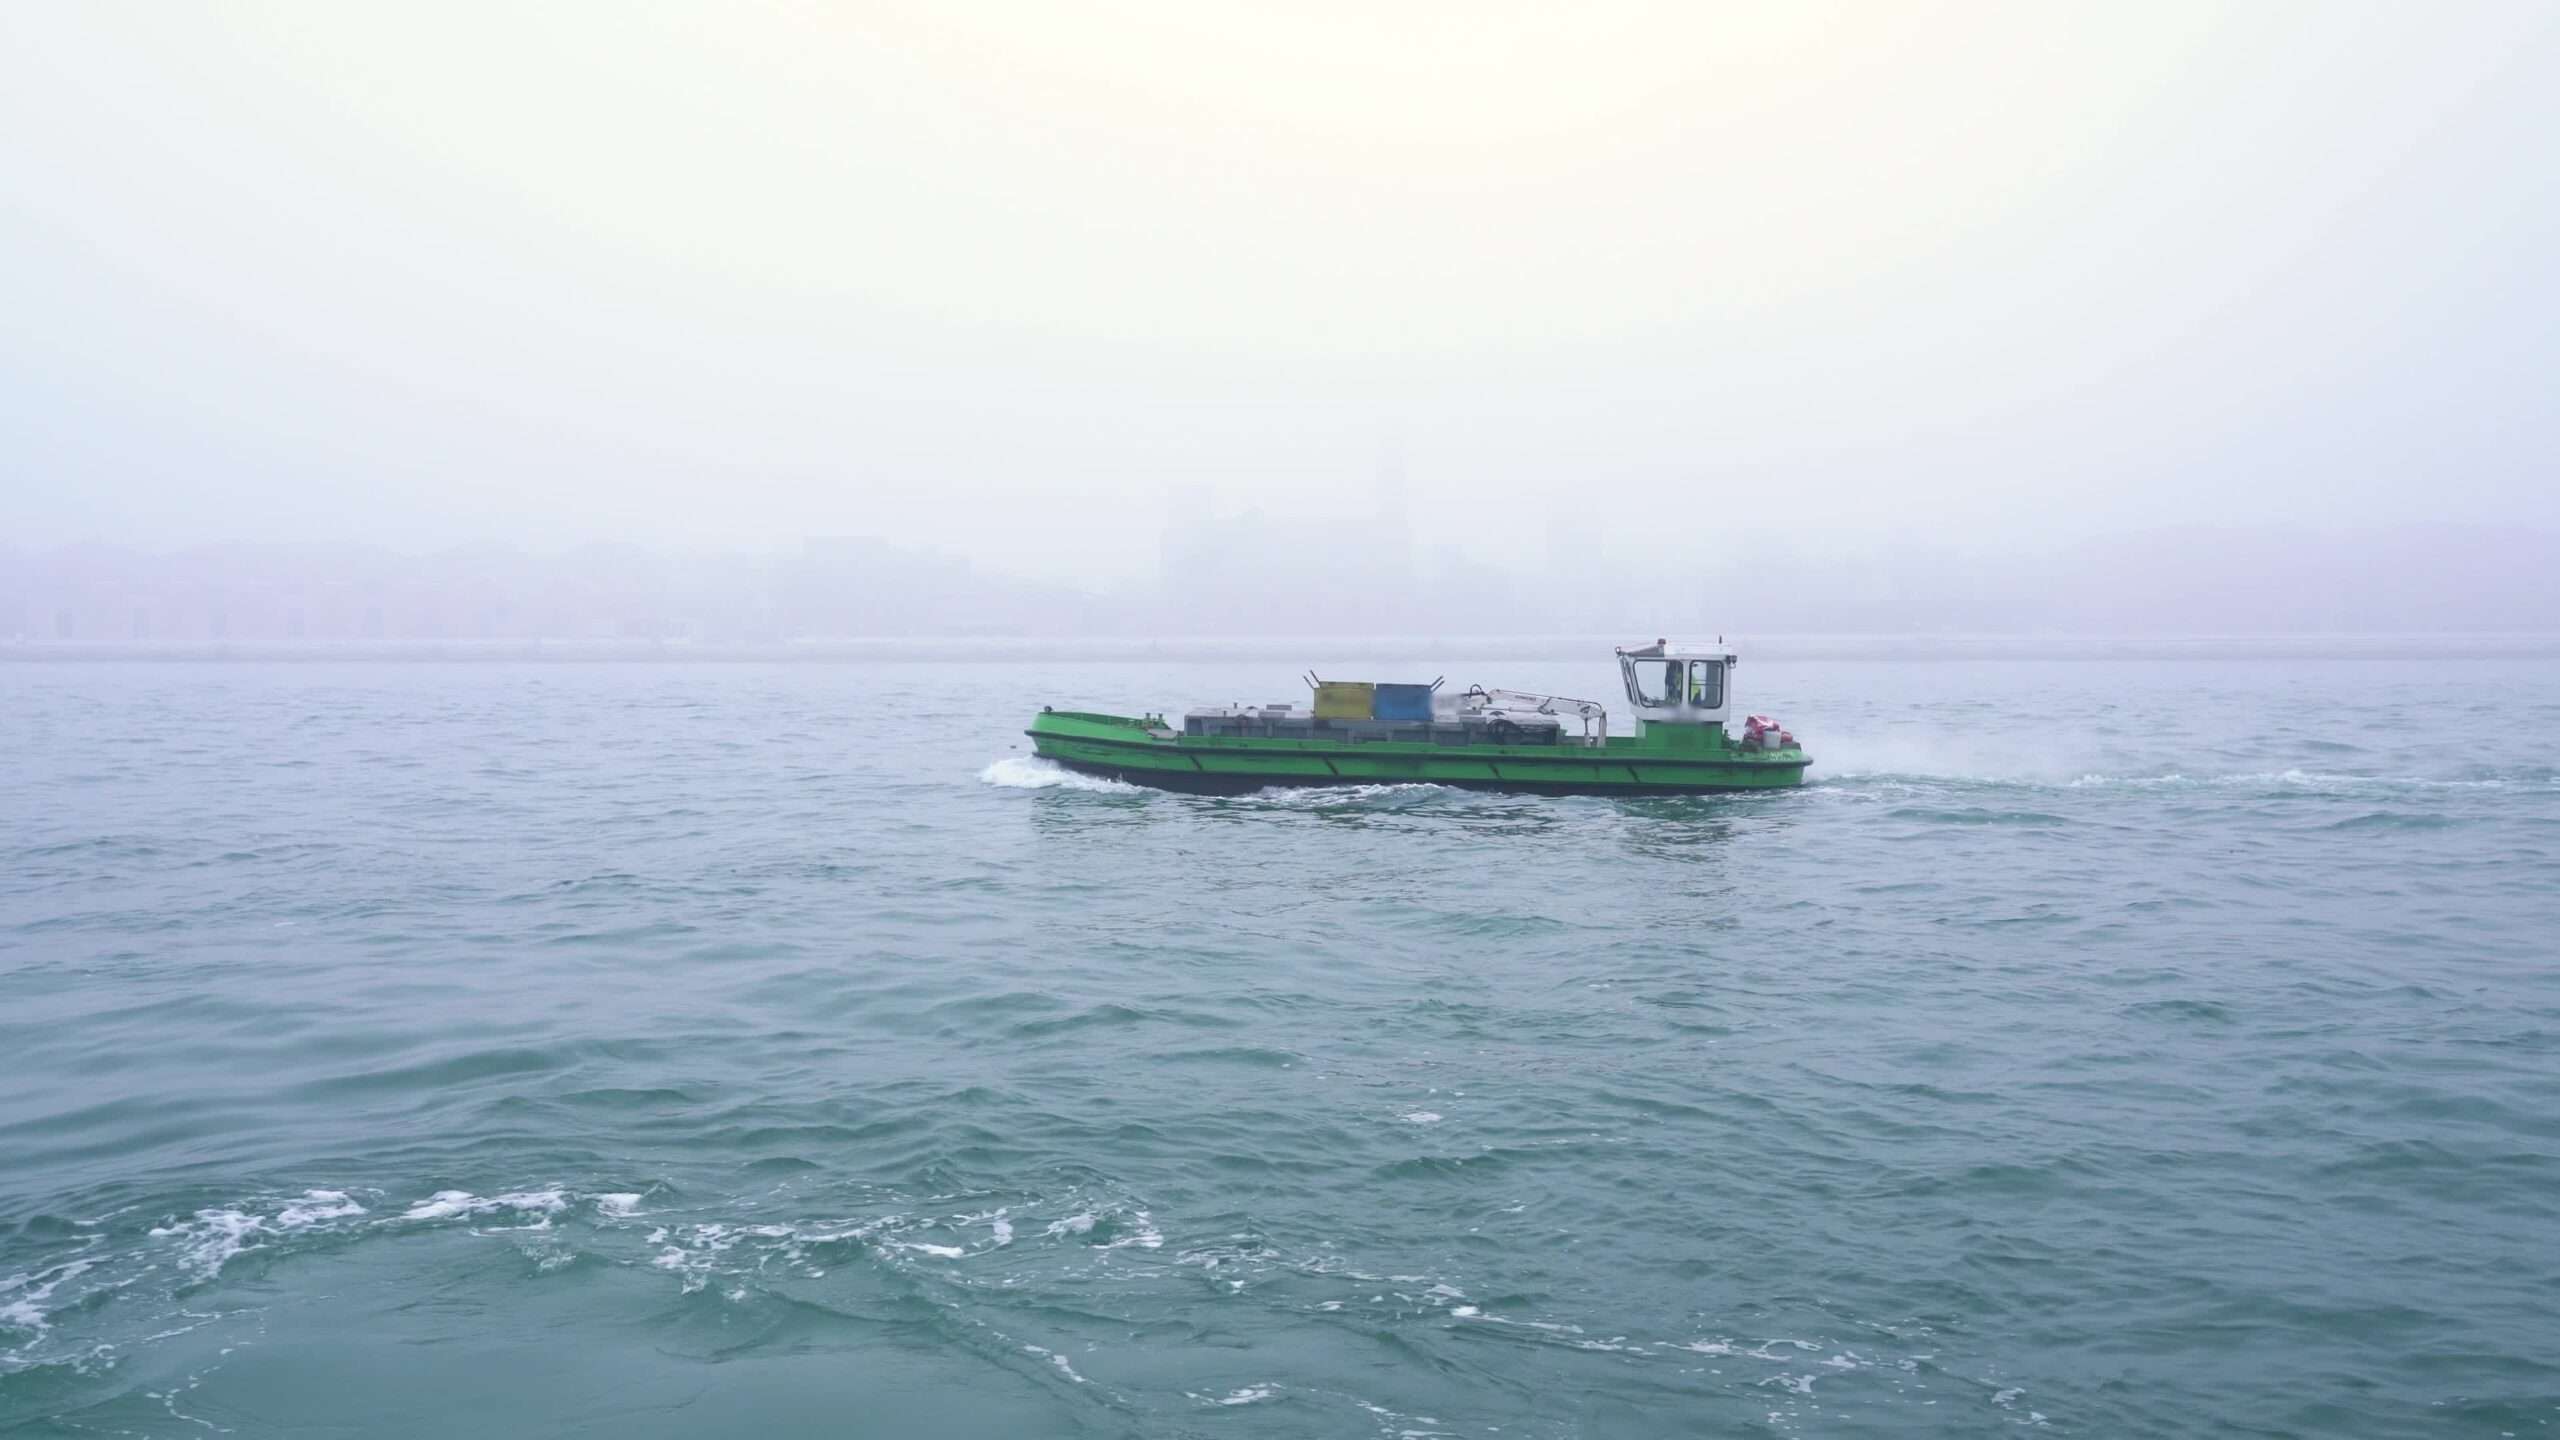 Il piccolo motoscafo naviga sulle sconfinate onde della laguna di Venezia